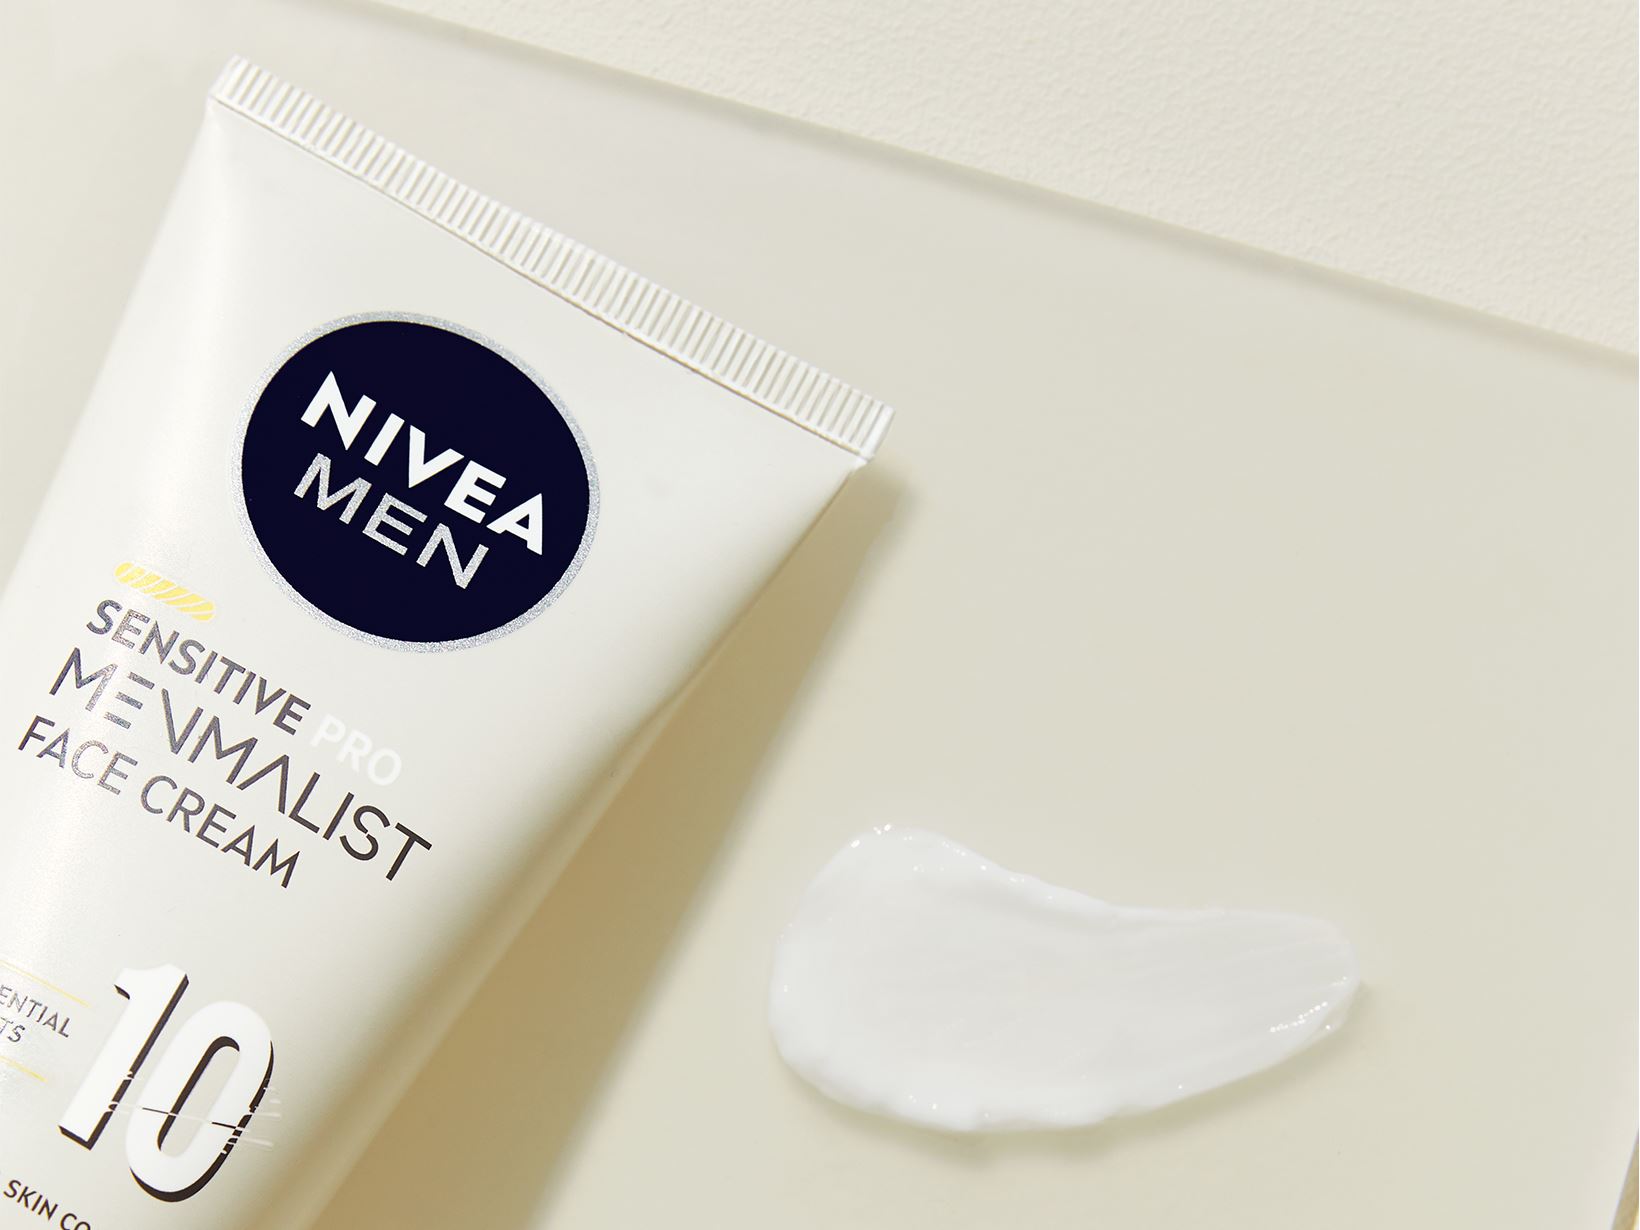 New NIVEA MEN Sensitive Pro Menmalist Face Cream and Sustainability